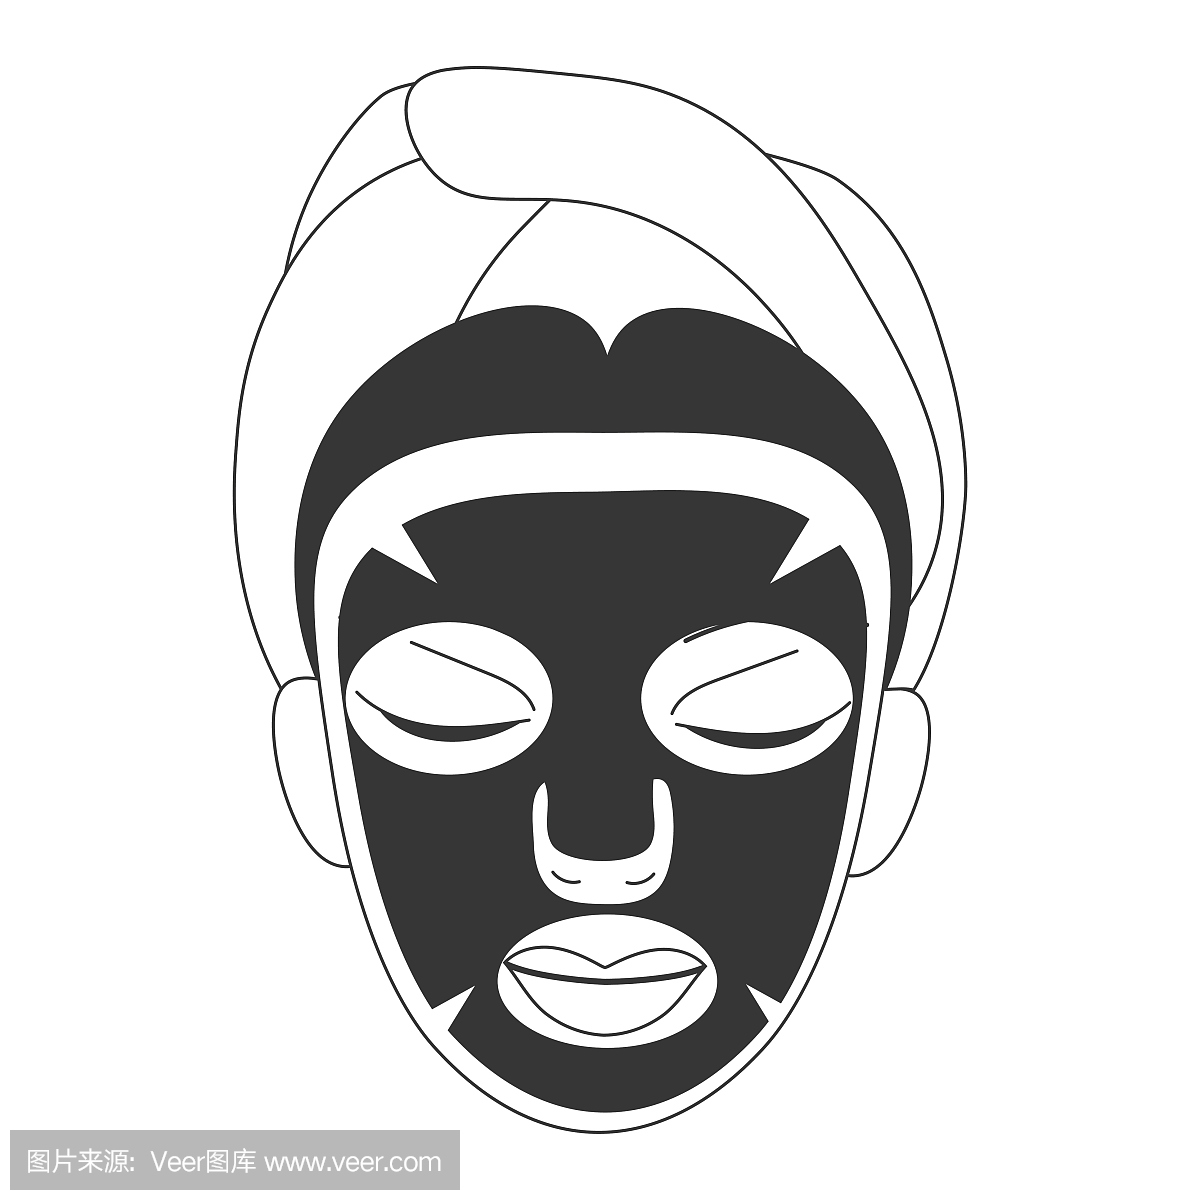 美容脸部护理线条艺术风格的矢量图:黑色单张